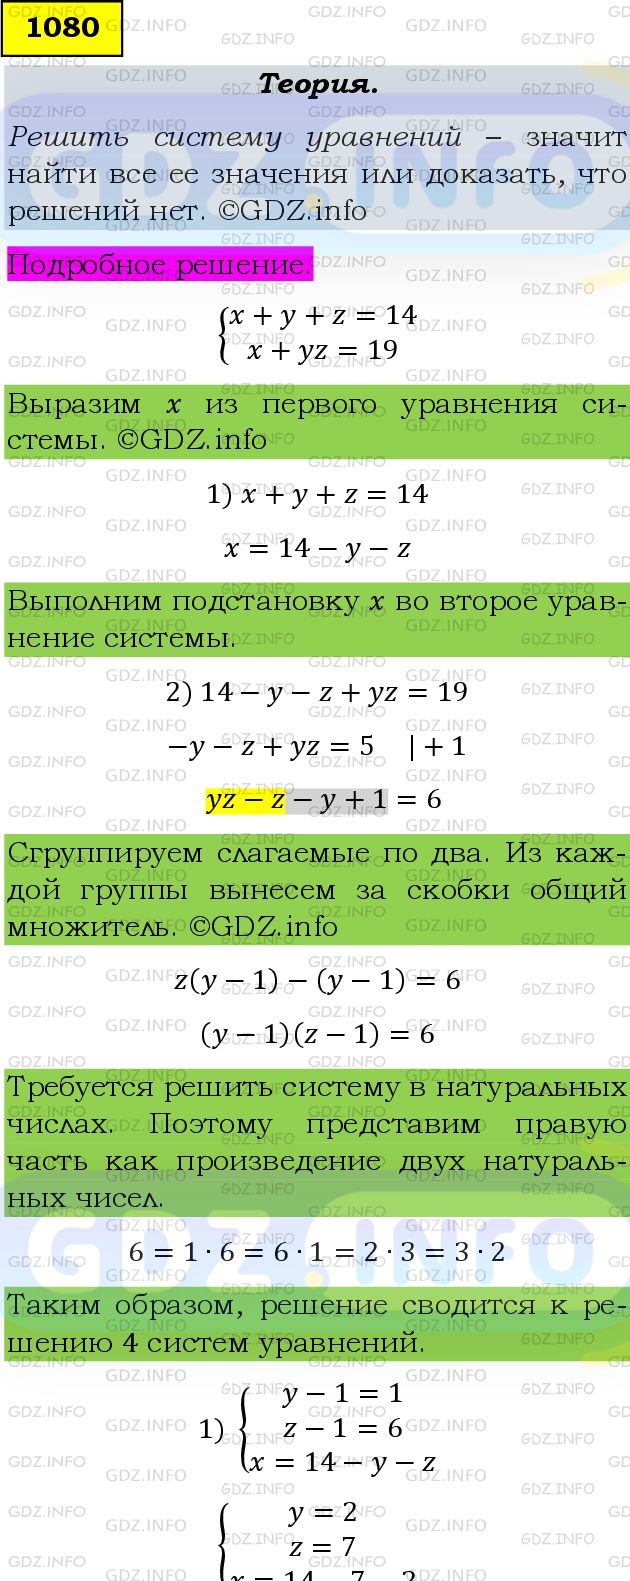 Фото подробного решения: Номер задания №1080 из ГДЗ по Алгебре 9 класс: Макарычев Ю.Н.